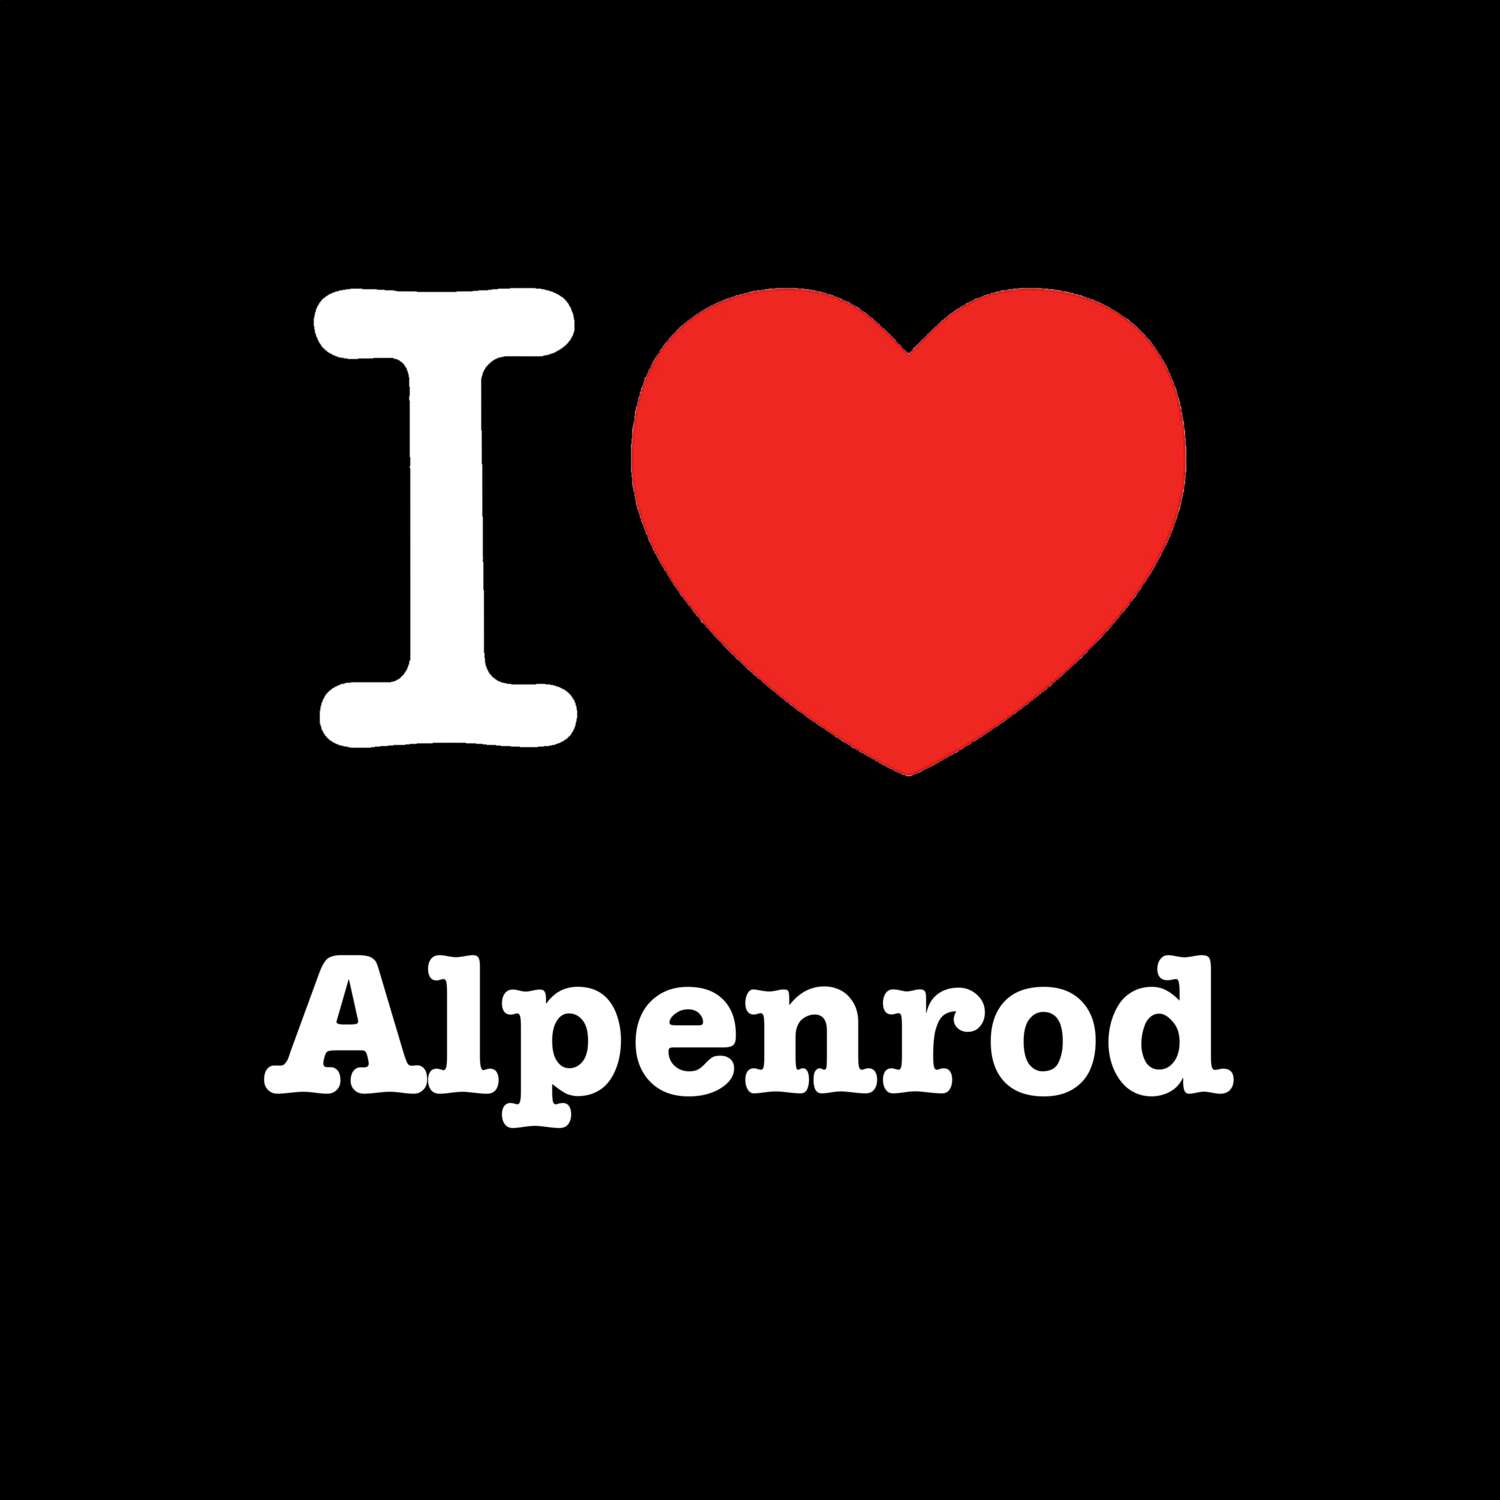 Alpenrod T-Shirt »I love«